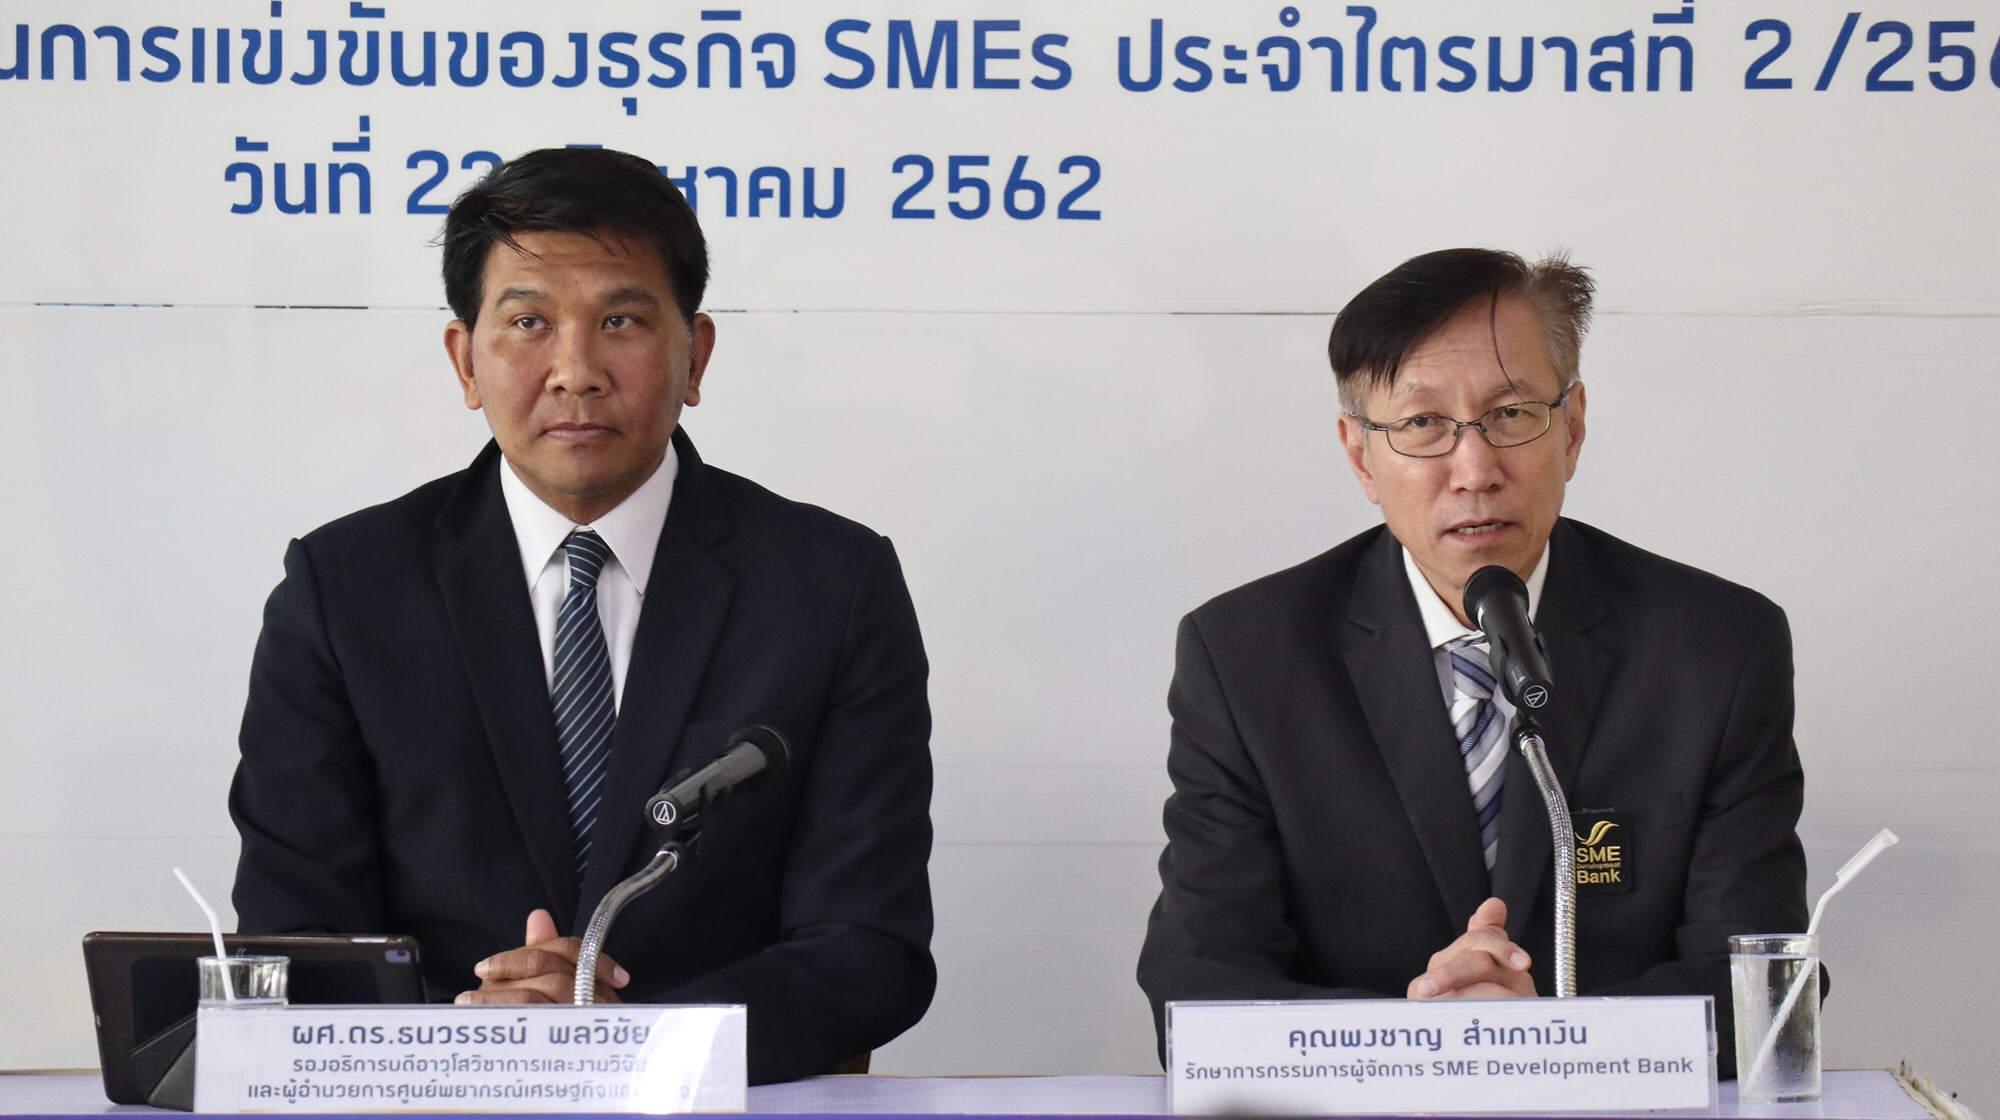 ม.หอการค้าไทย เผยดัชนี SMEs Q2/2562 ปรับลด เชื่อมาตรการกระตุ้น ศก.ช่วยฟื้น